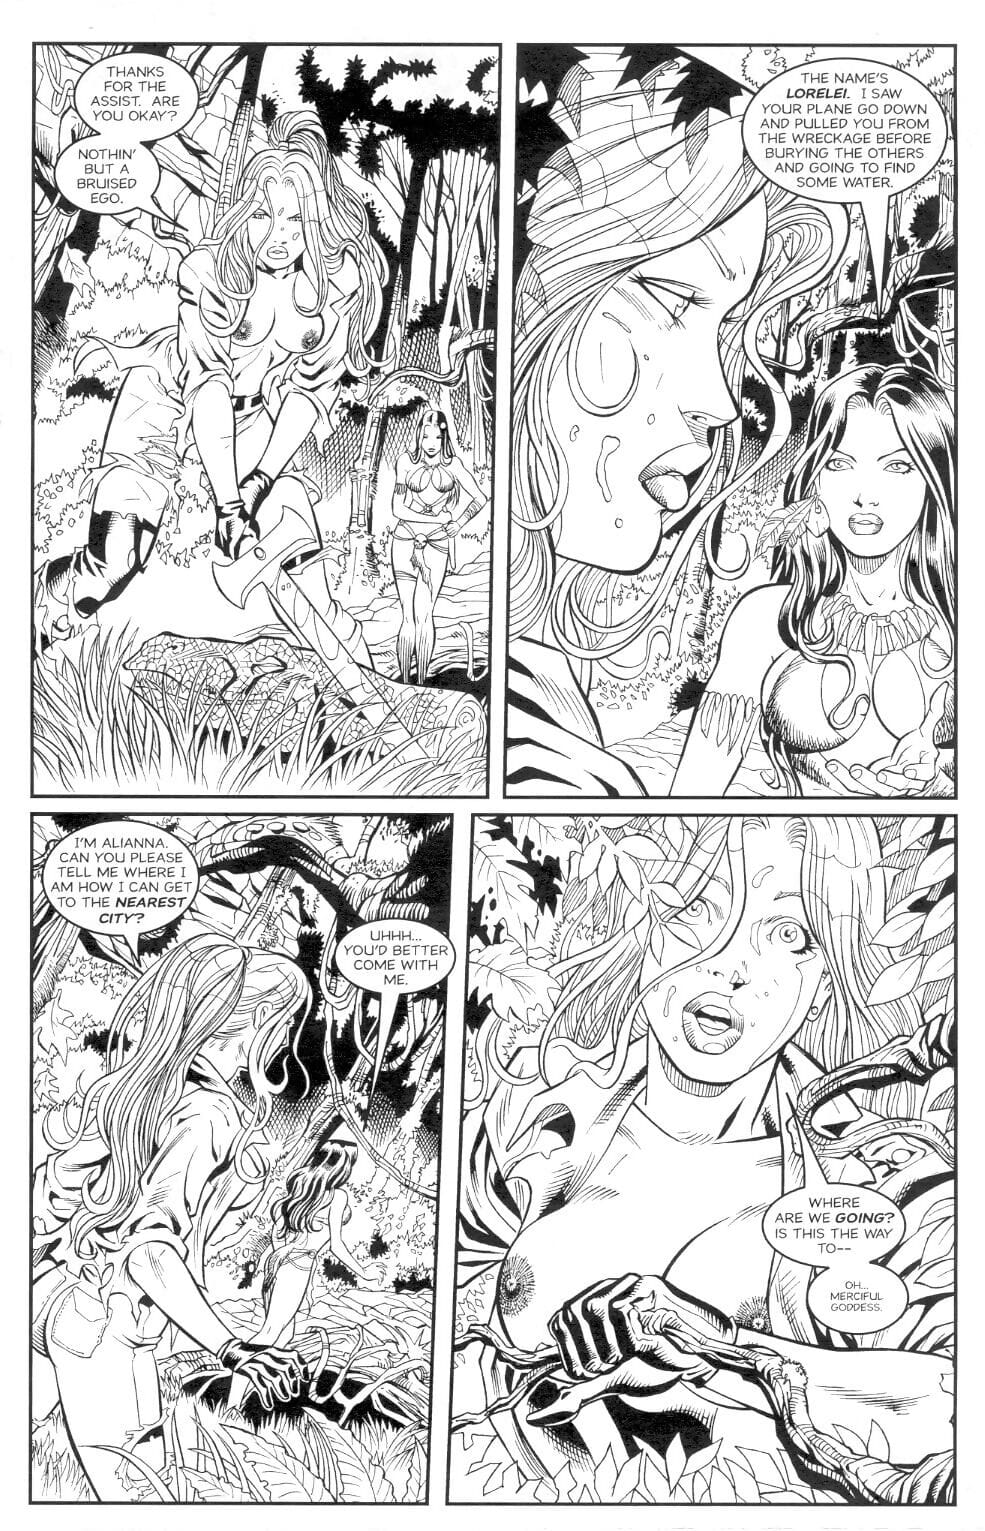 Jungle Fantasy #1/2 page 1